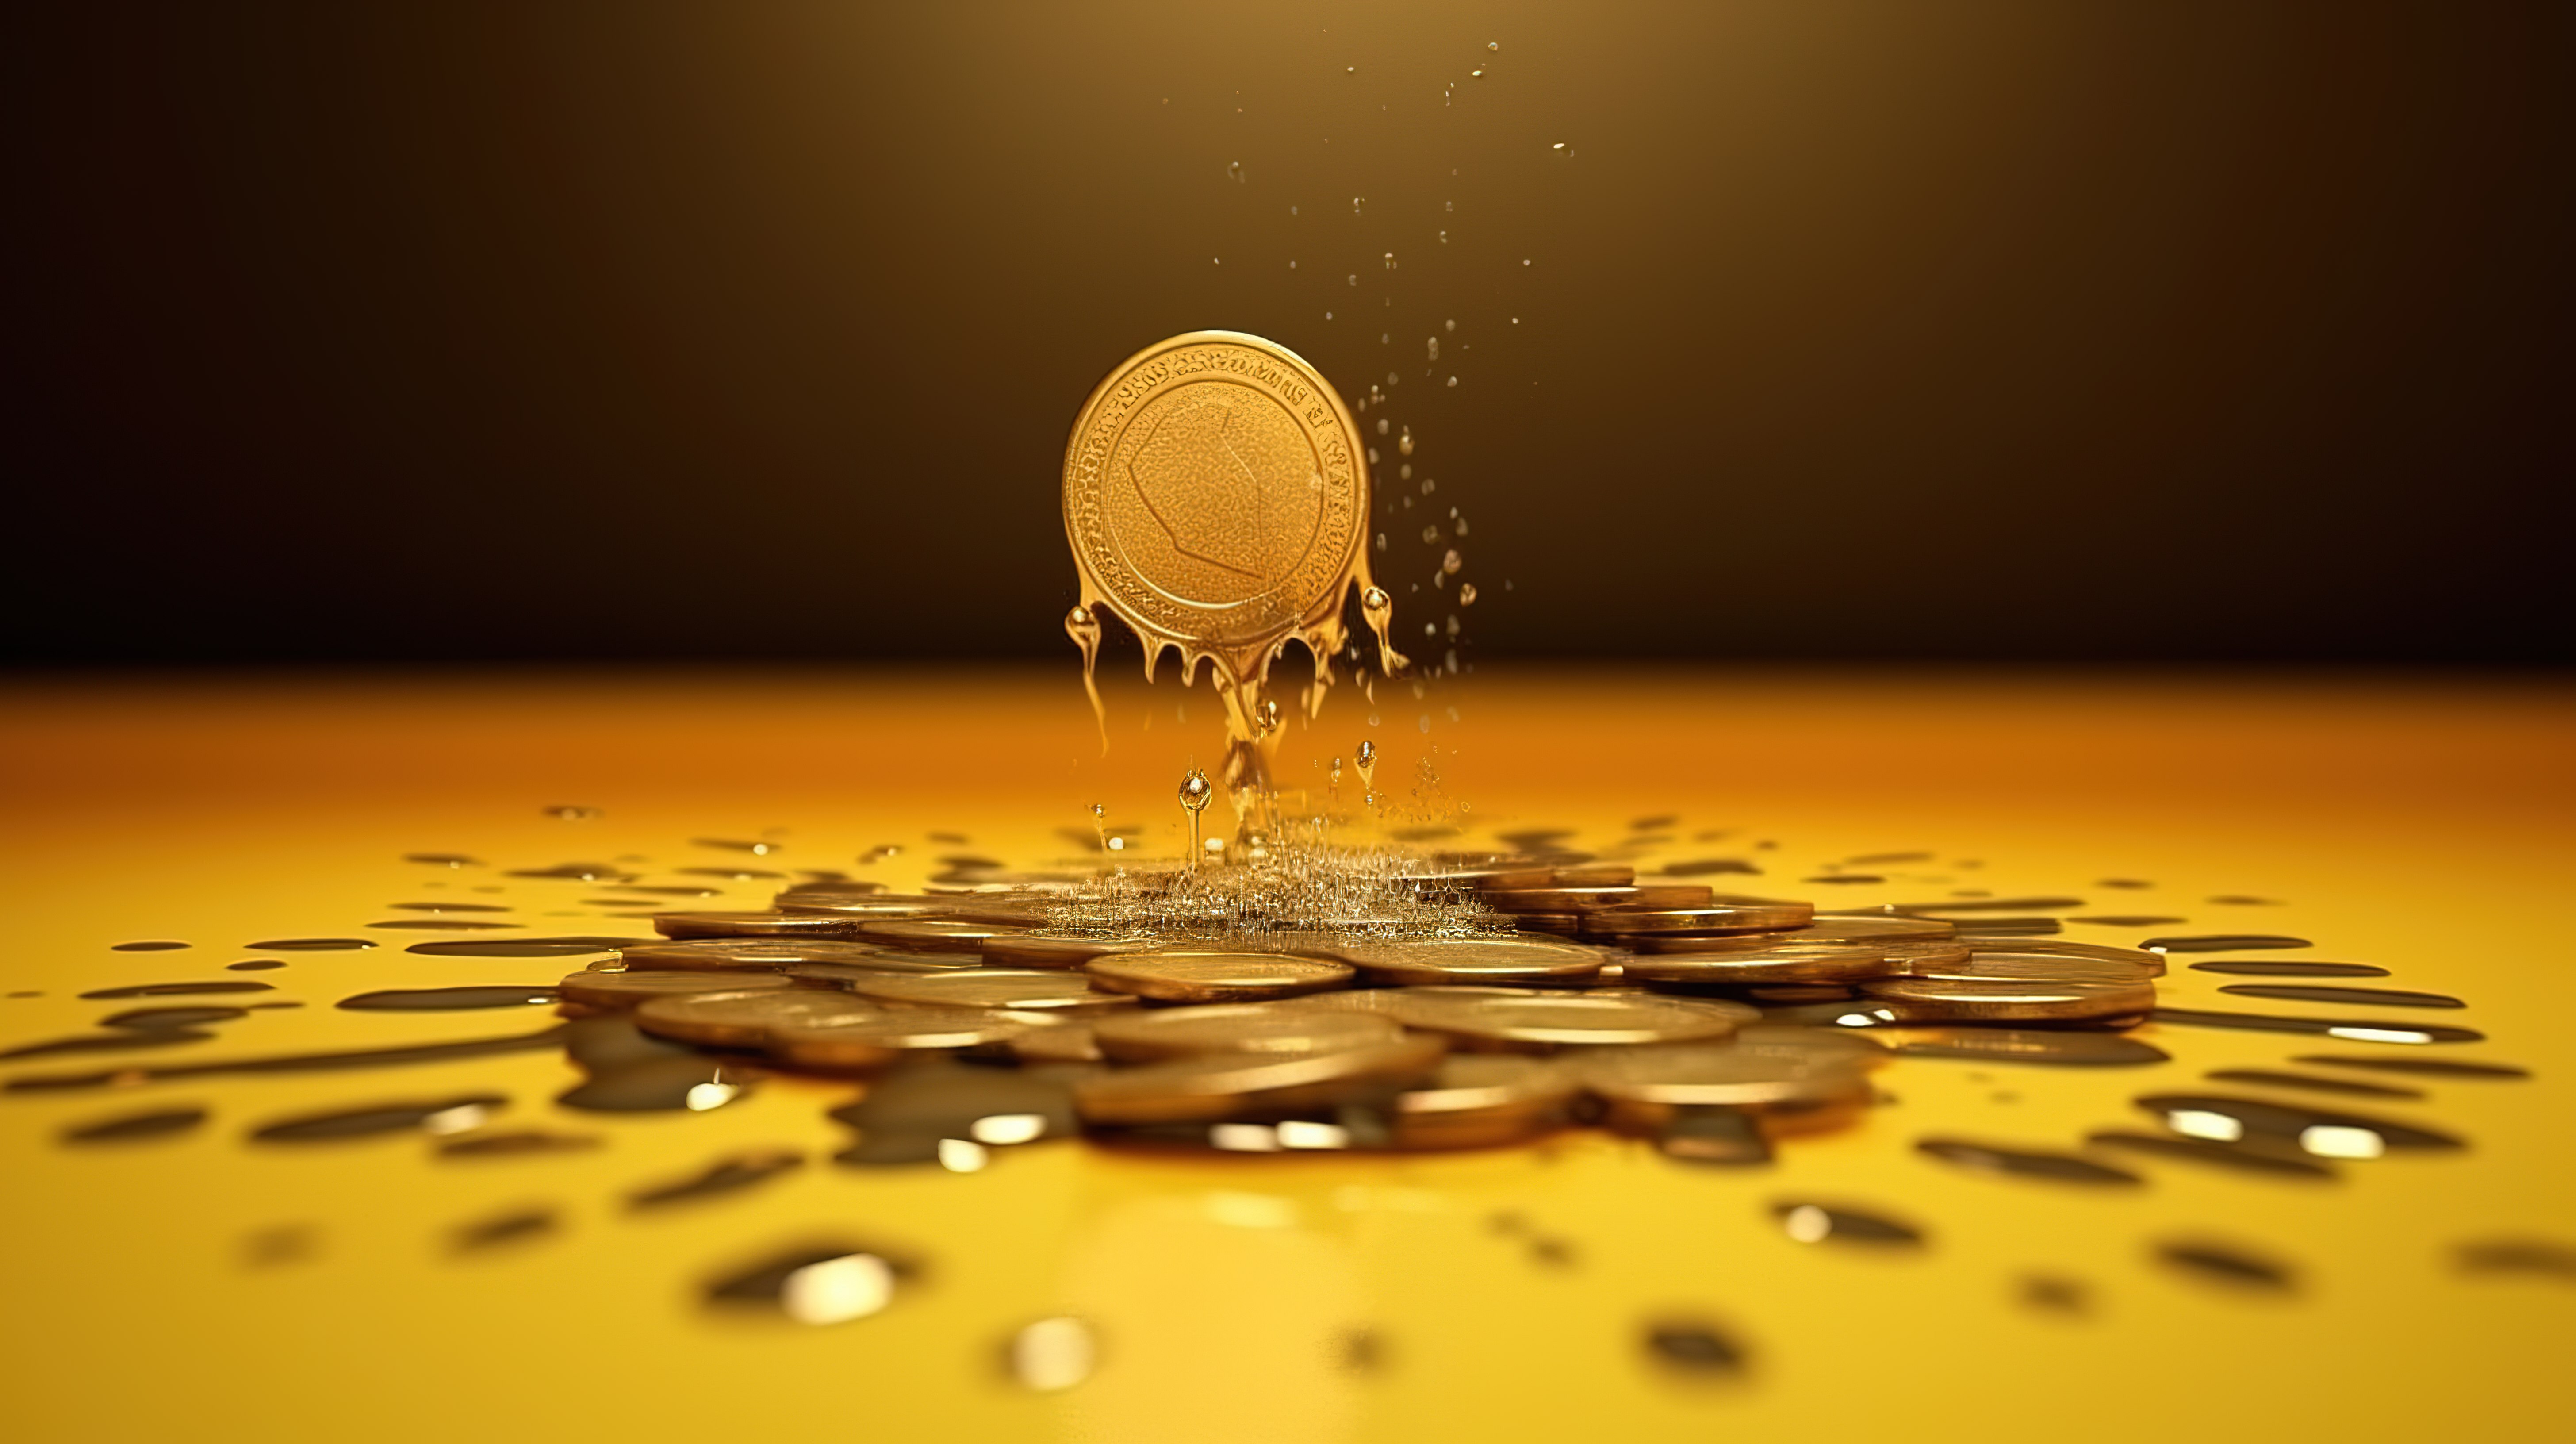 标志性金币从高处暴跌 融资提议公布 3D 模型图片